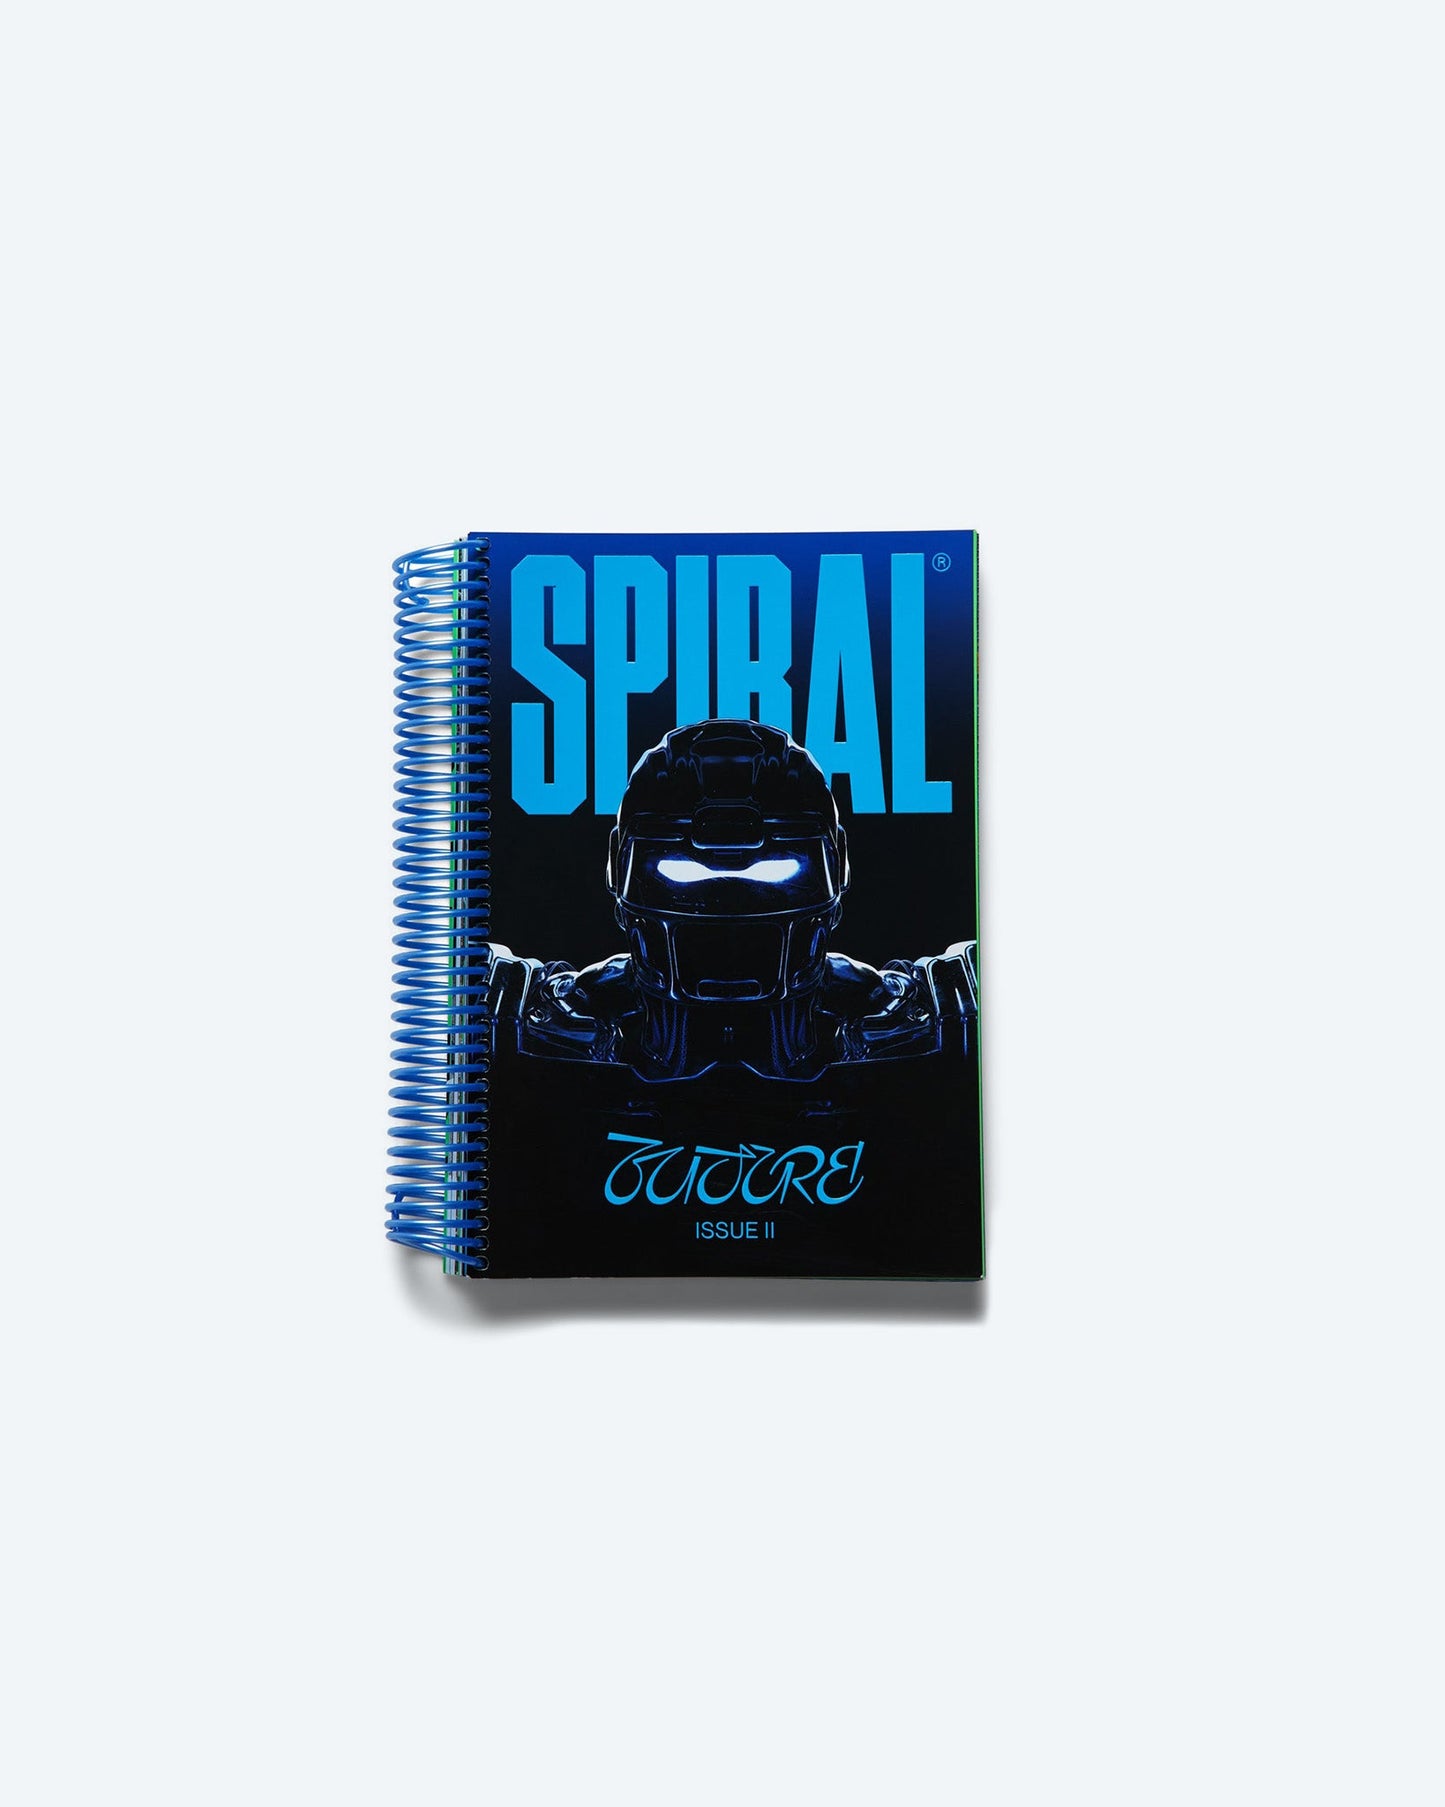 Spiral 02